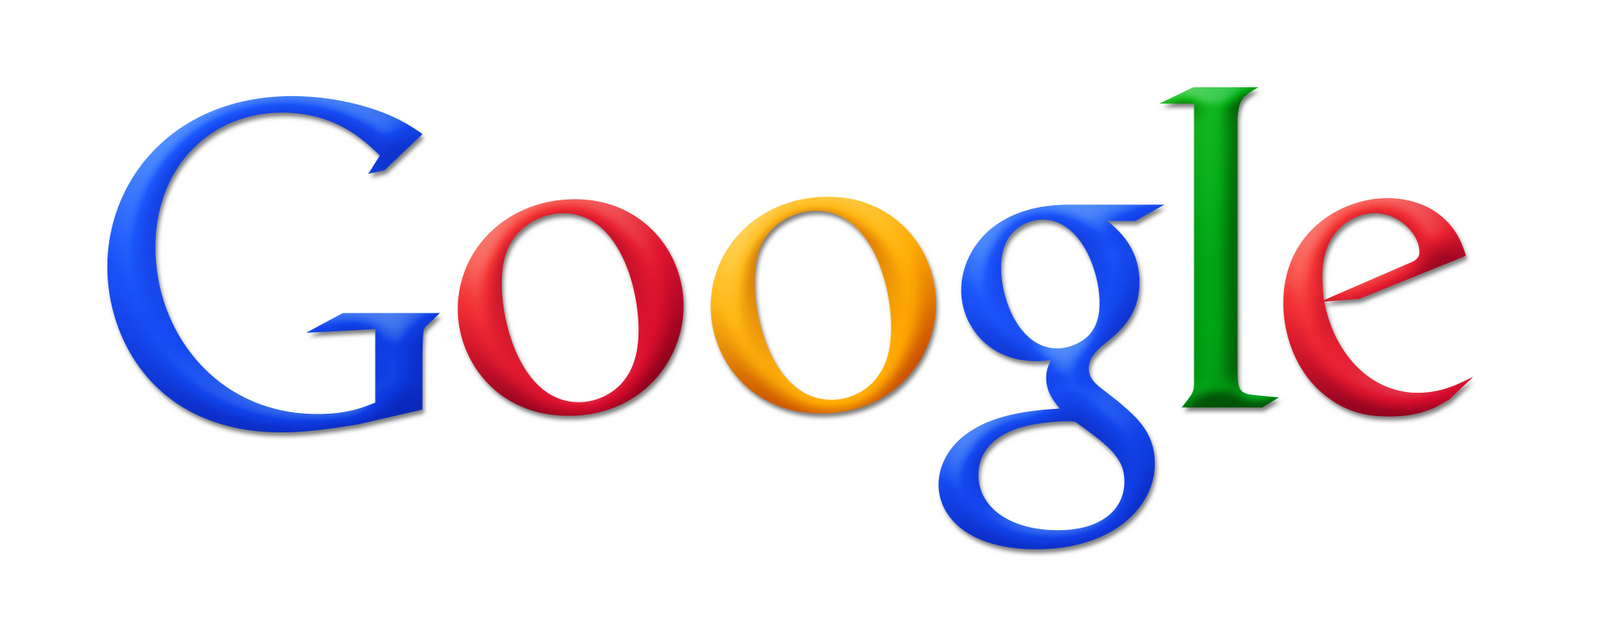 Google Company Logo